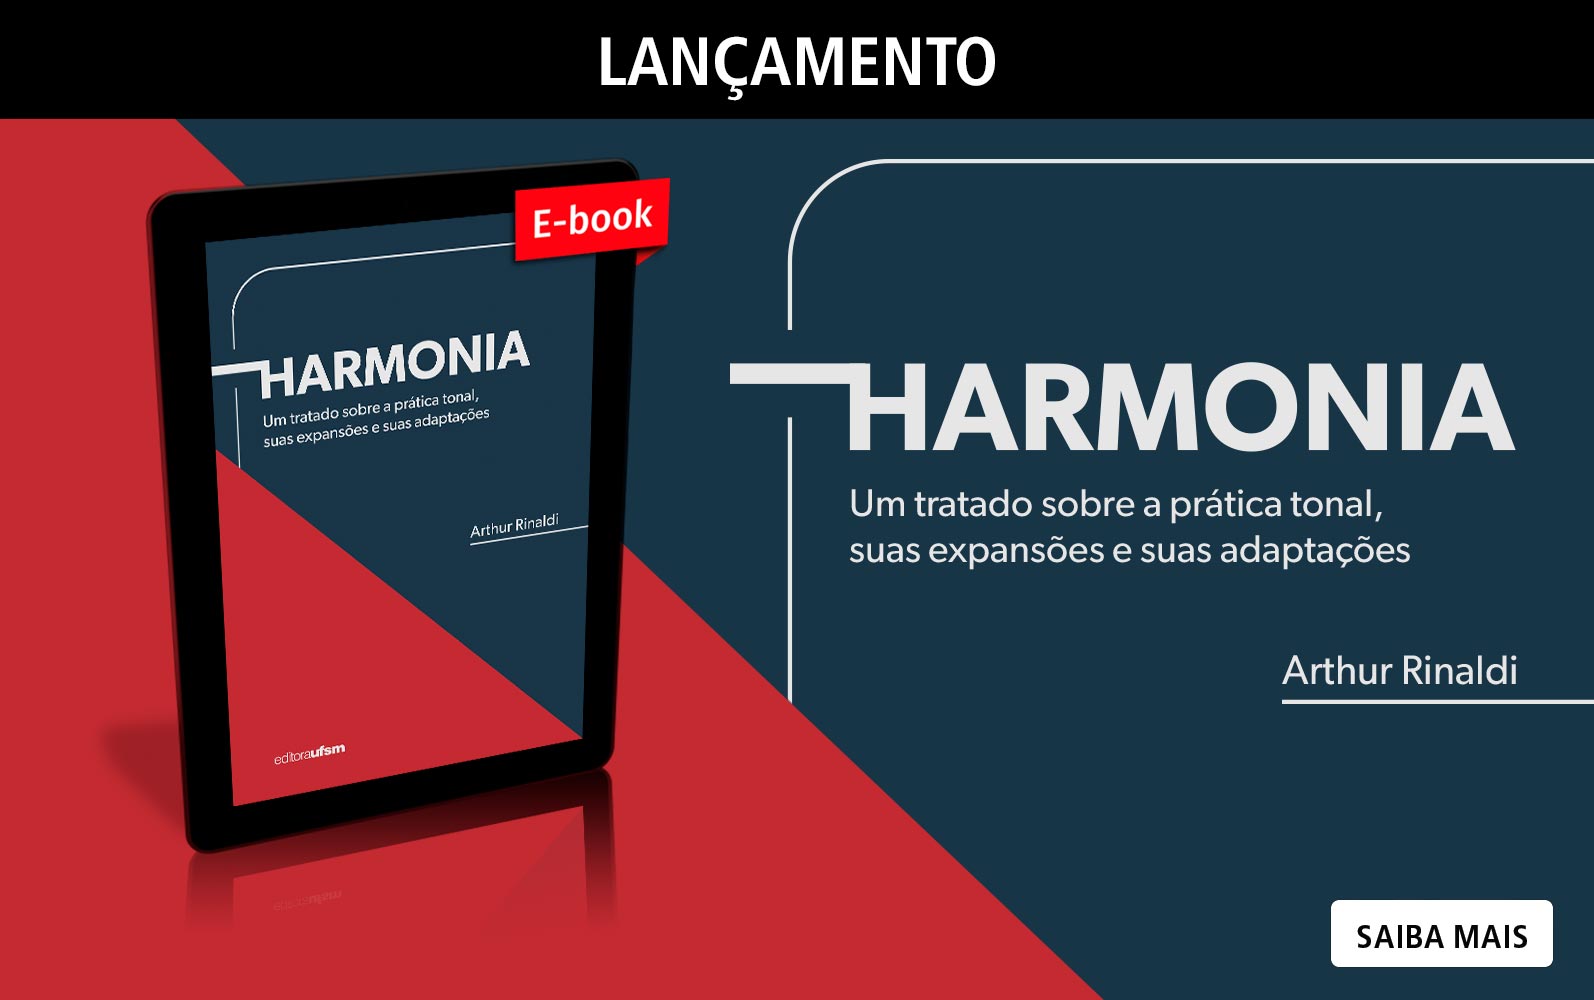 Saiba mais sobre o e-book Harmonia: um tratado sobre a prática tonal, suas expansões e adaptações